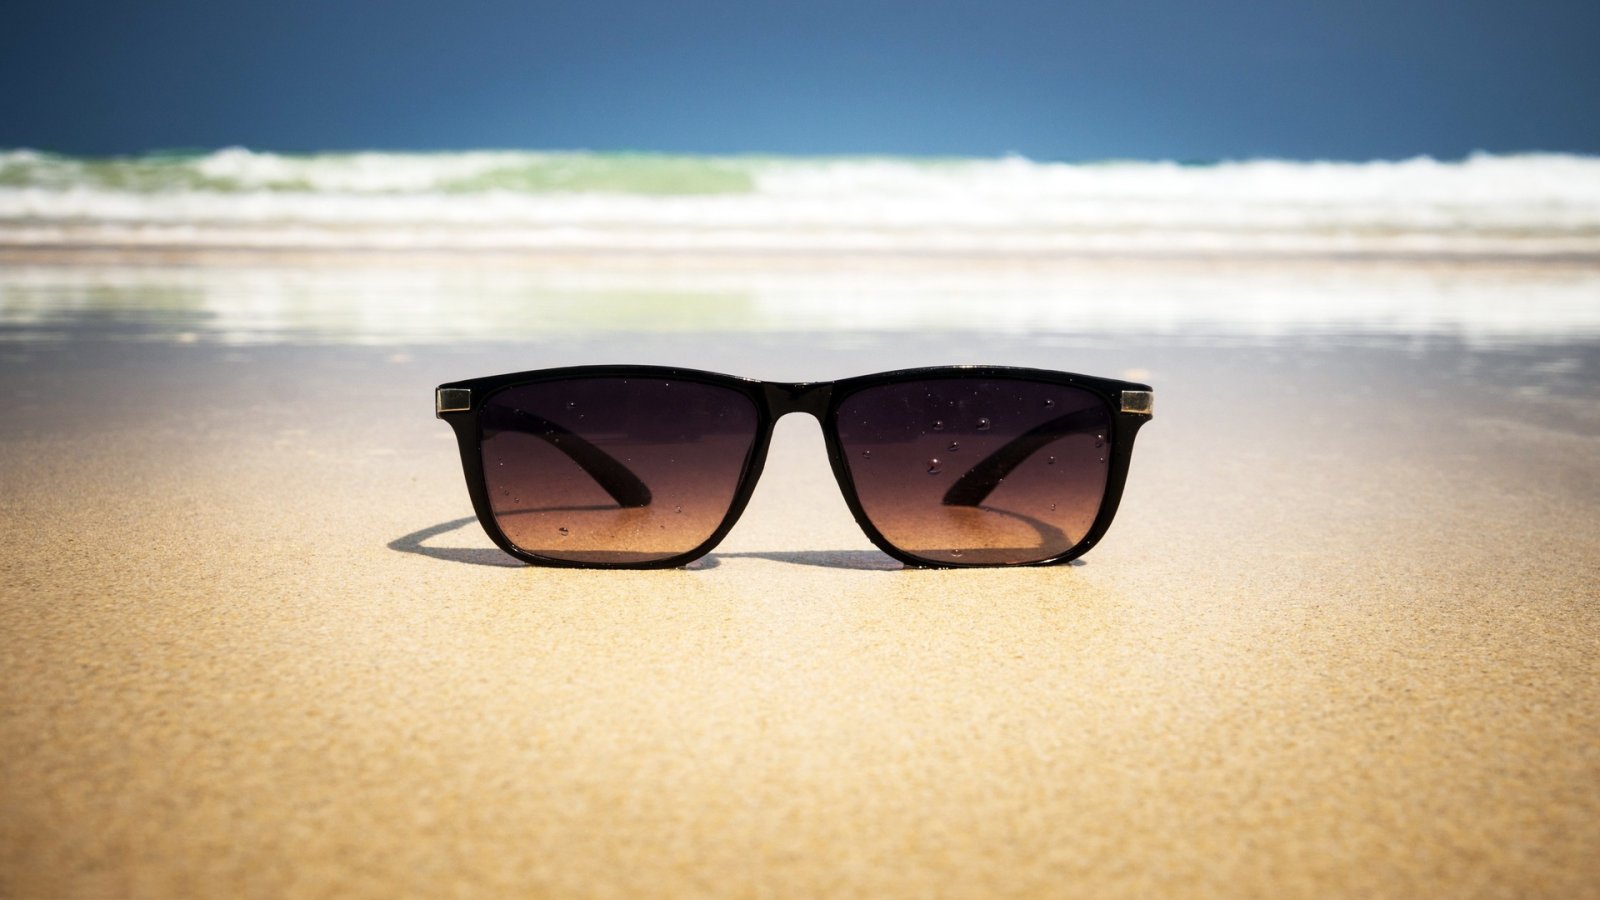 As 6 principais opções de óculos de sol de verão legais e acessíveis